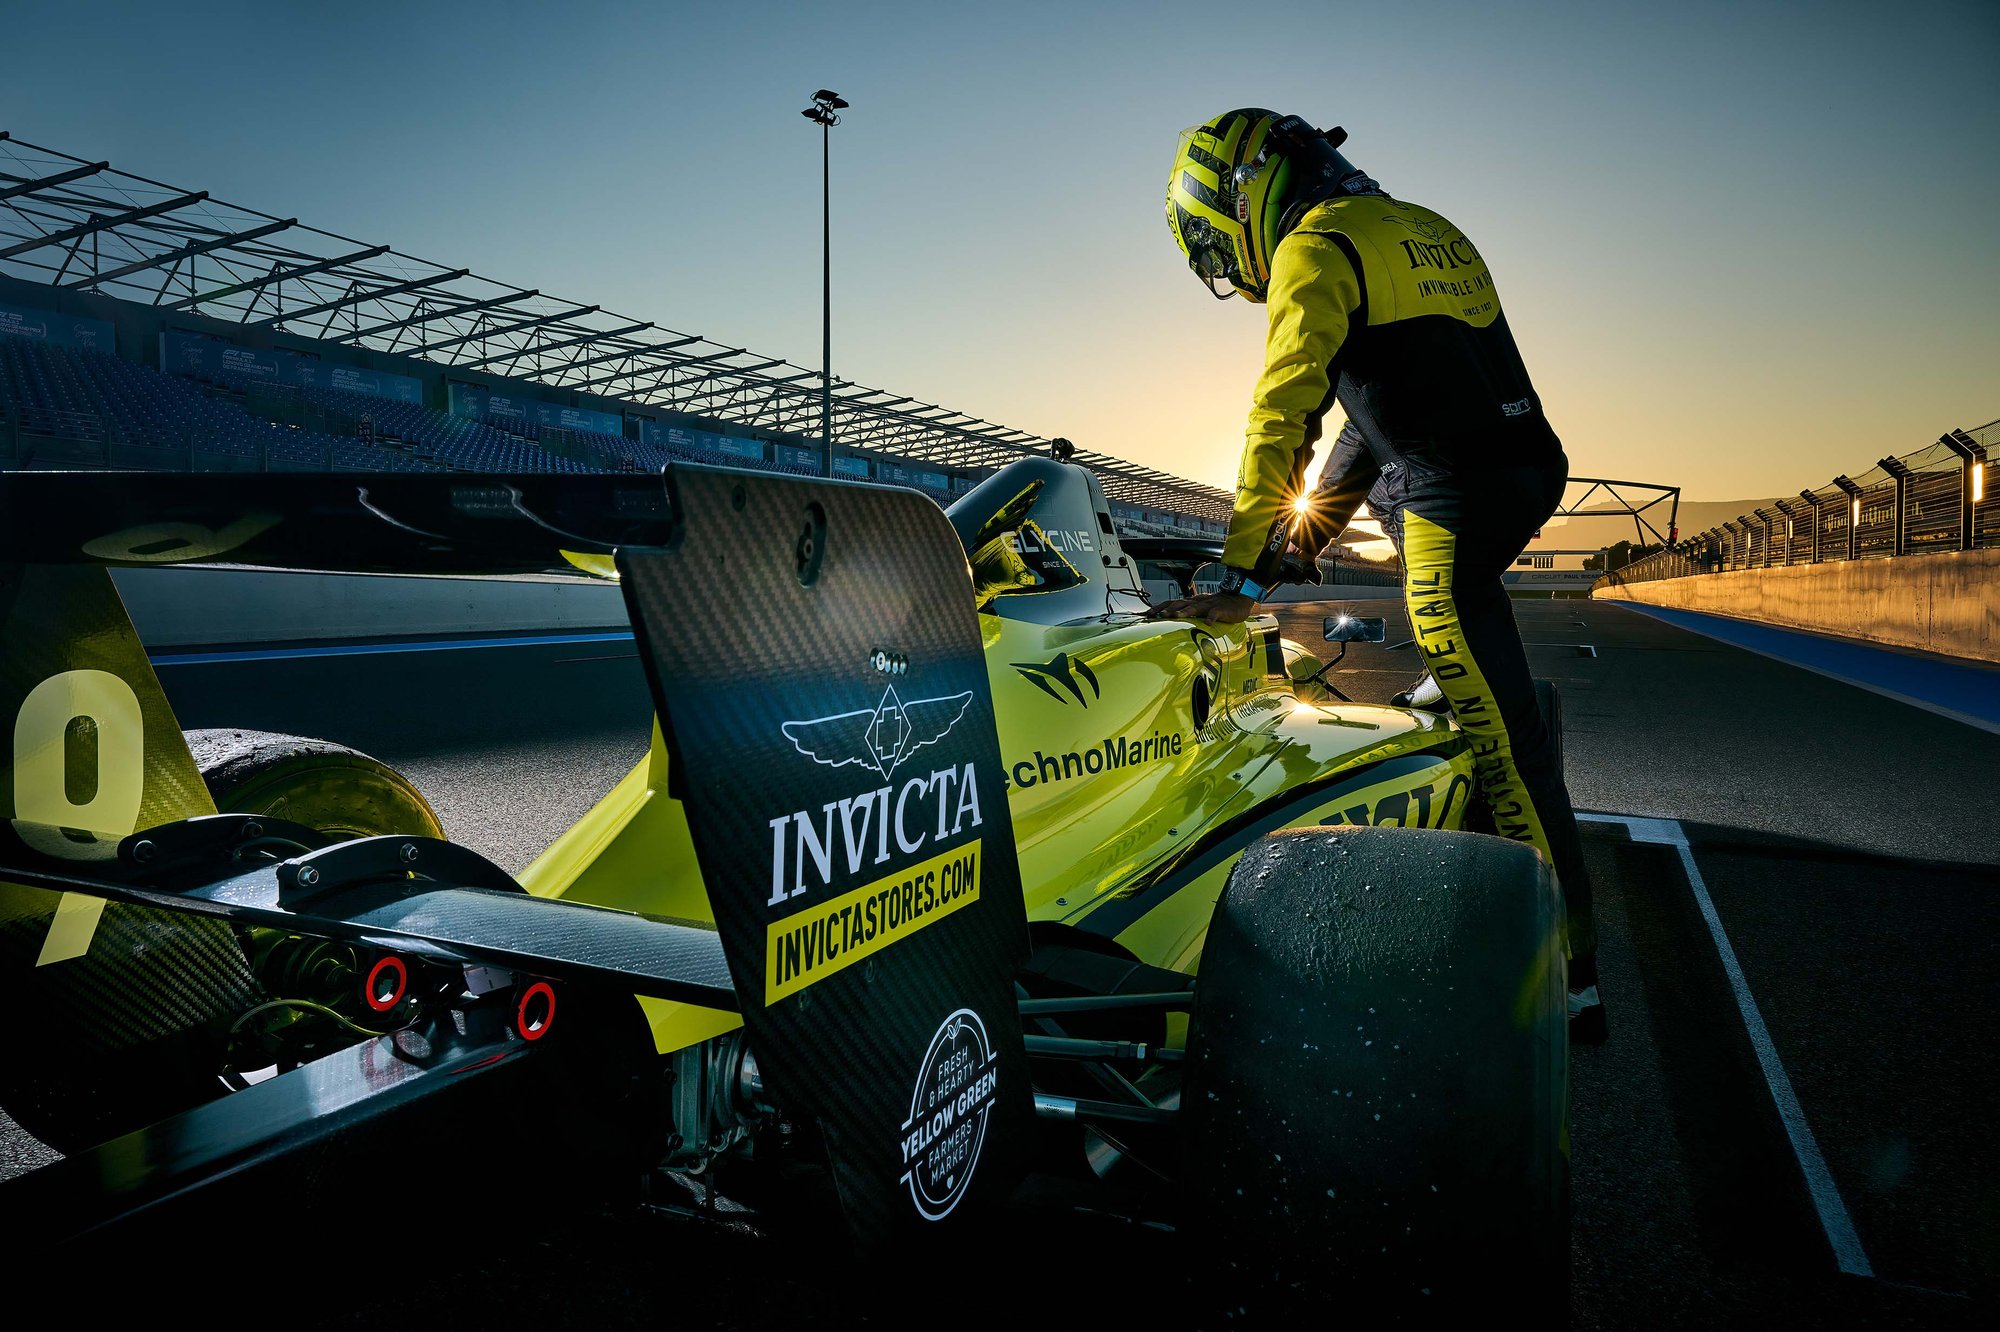 Juan Manuel Correa steps into racing car Invicta